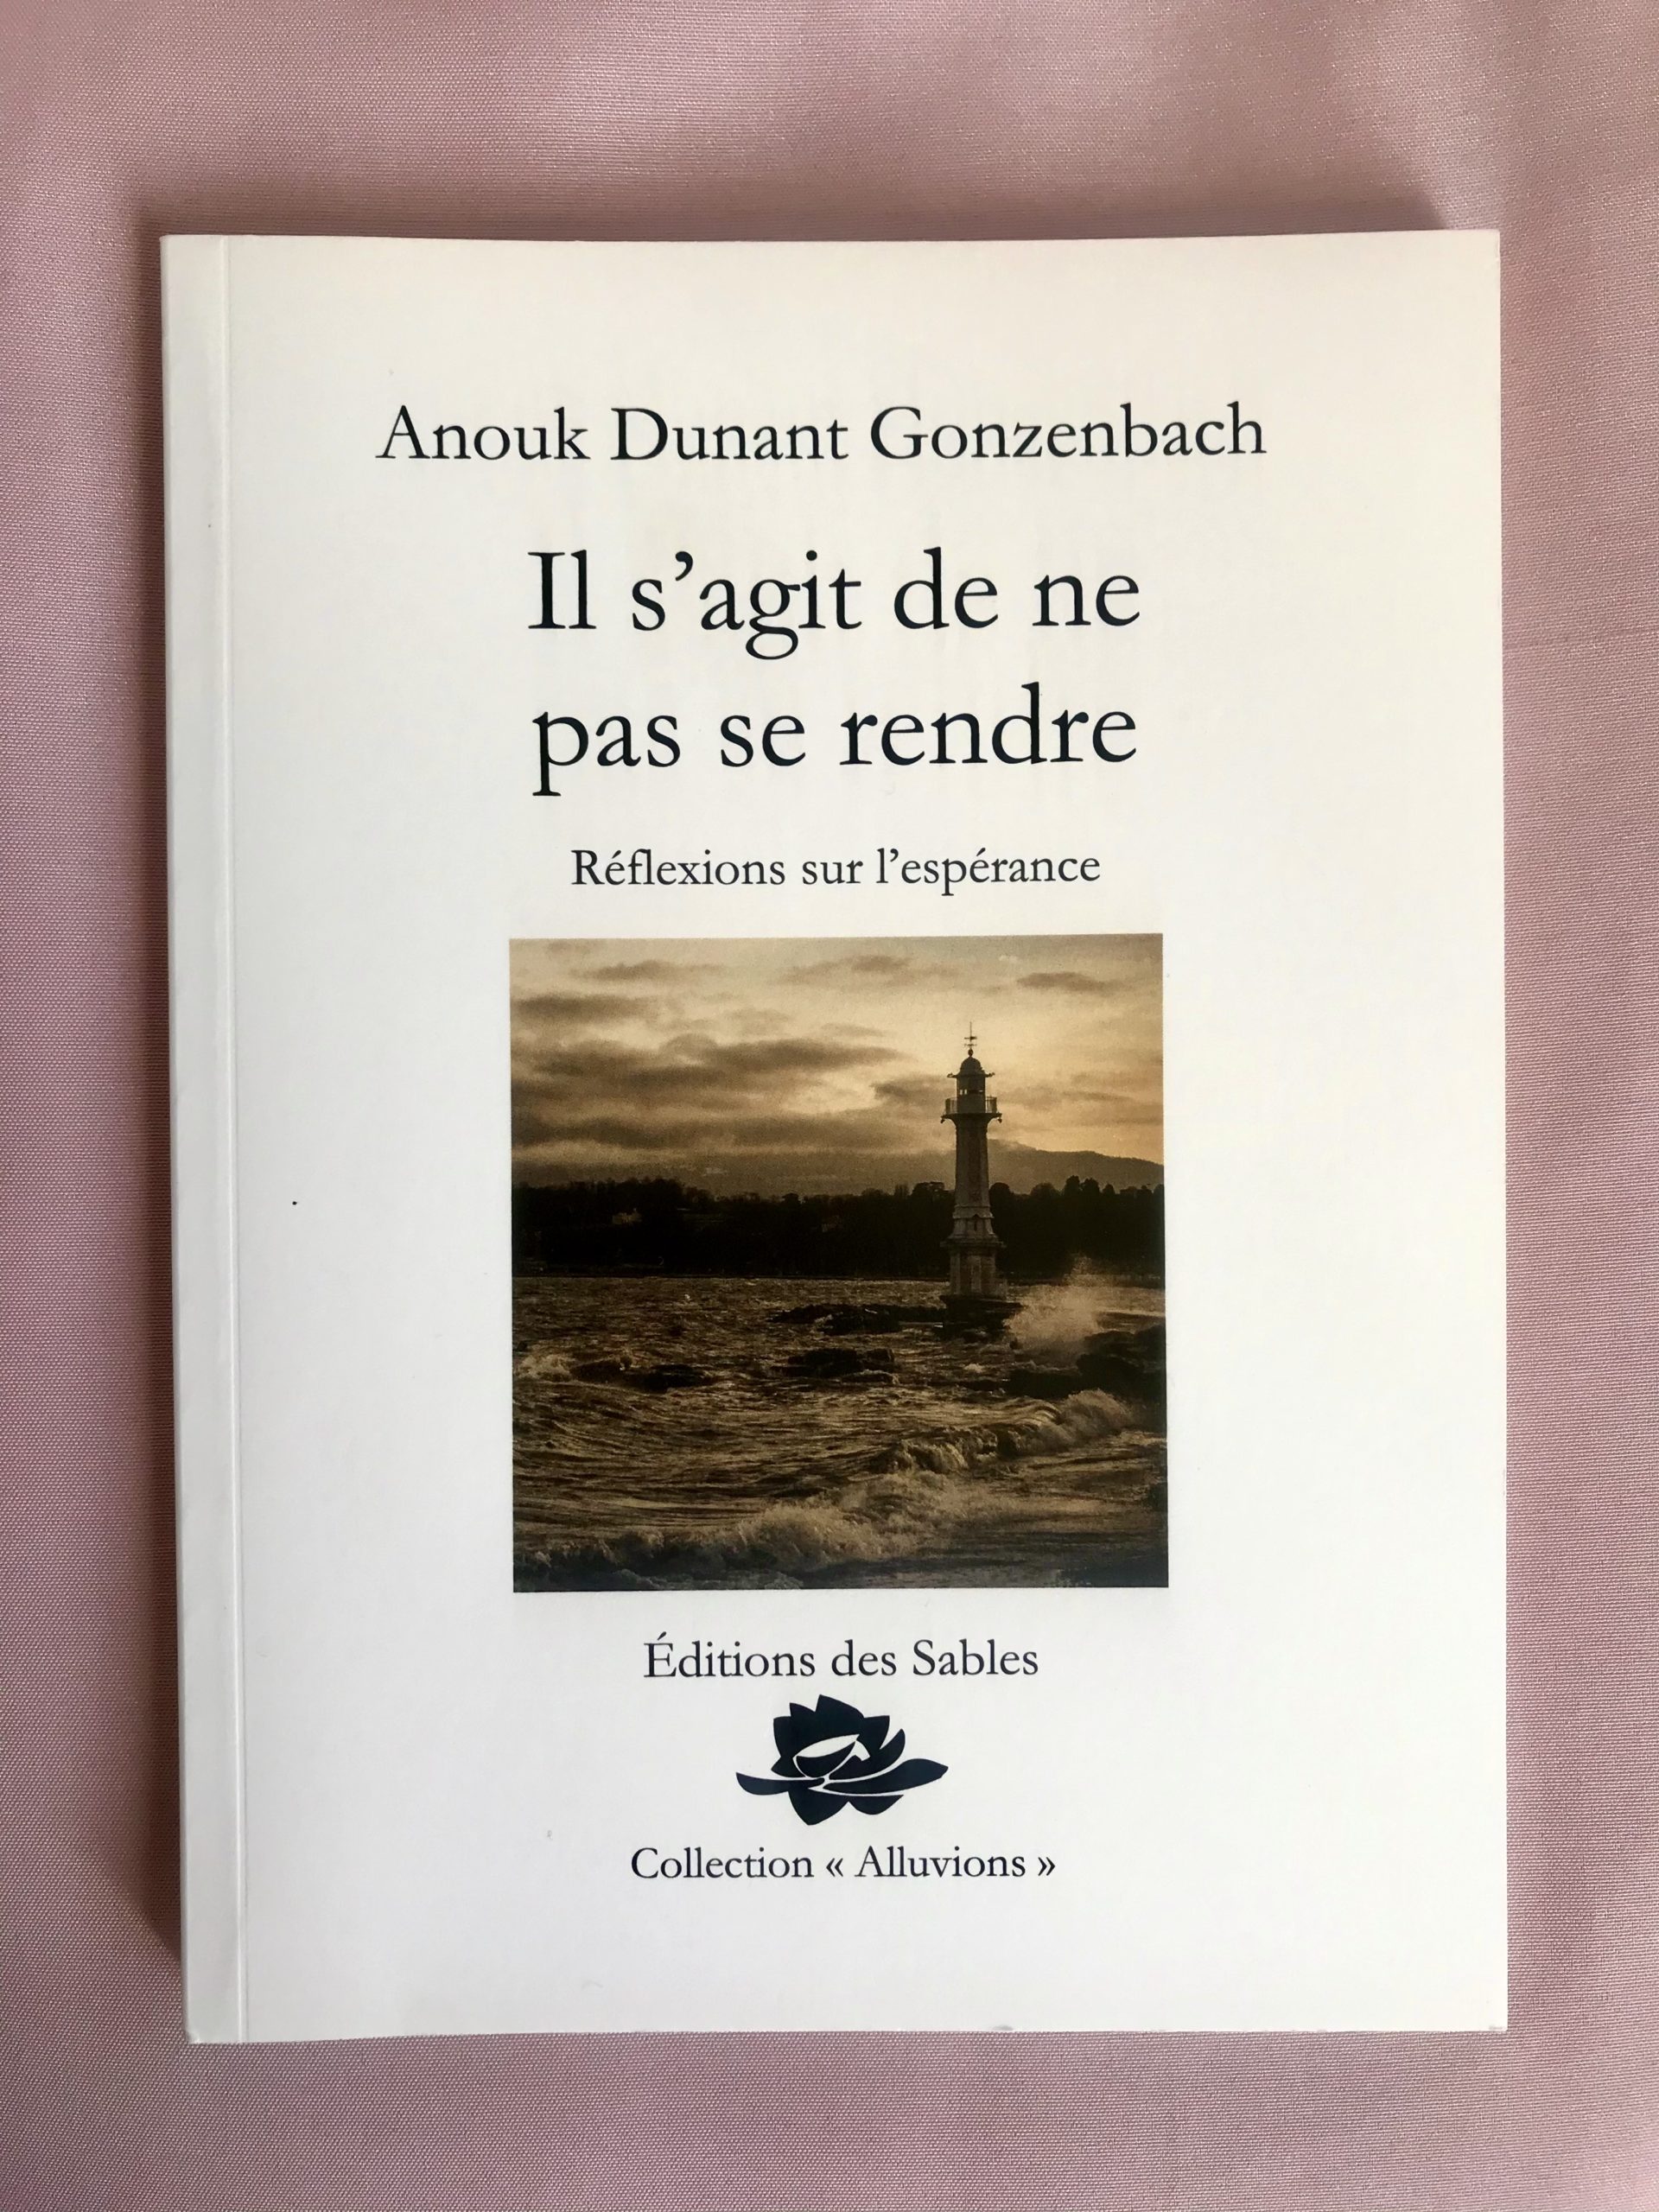 Un livre 5 questions : « Il s’agit de ne pas se rendre » d’Anouk Dunant Gonzenbach